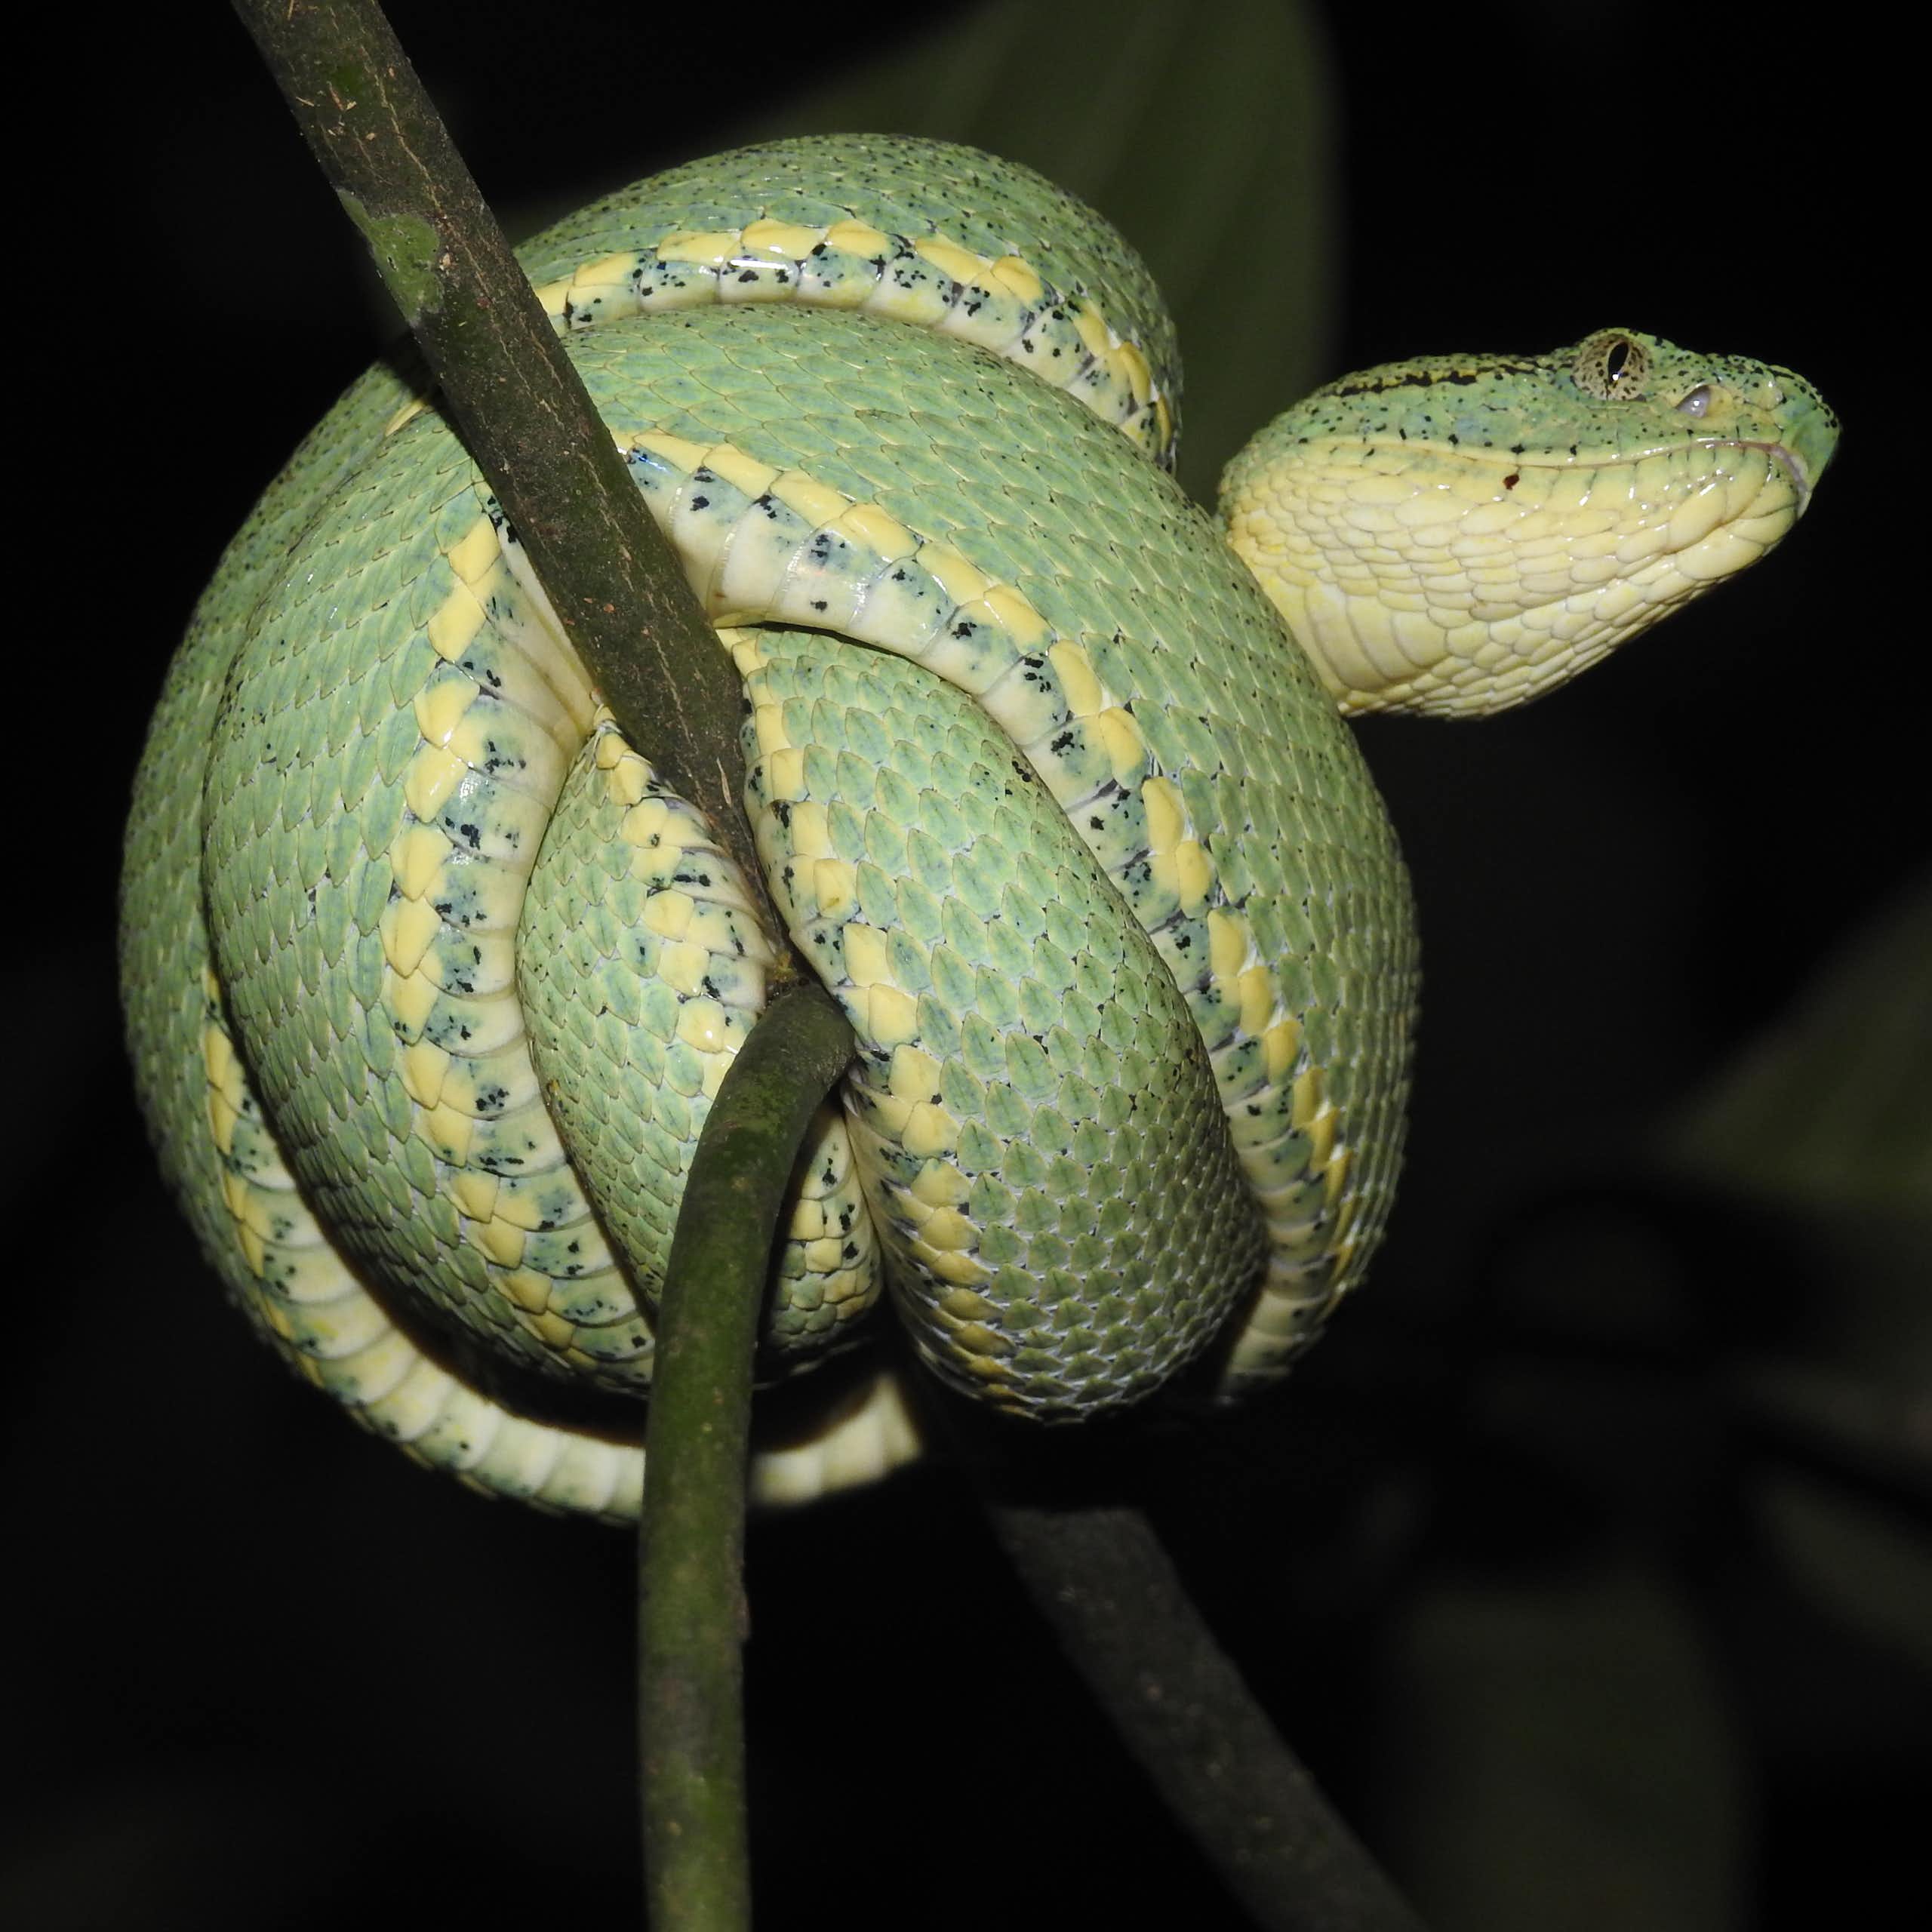 Foto mostra cobra verde enrolada sobre si mesma num galho de árvore